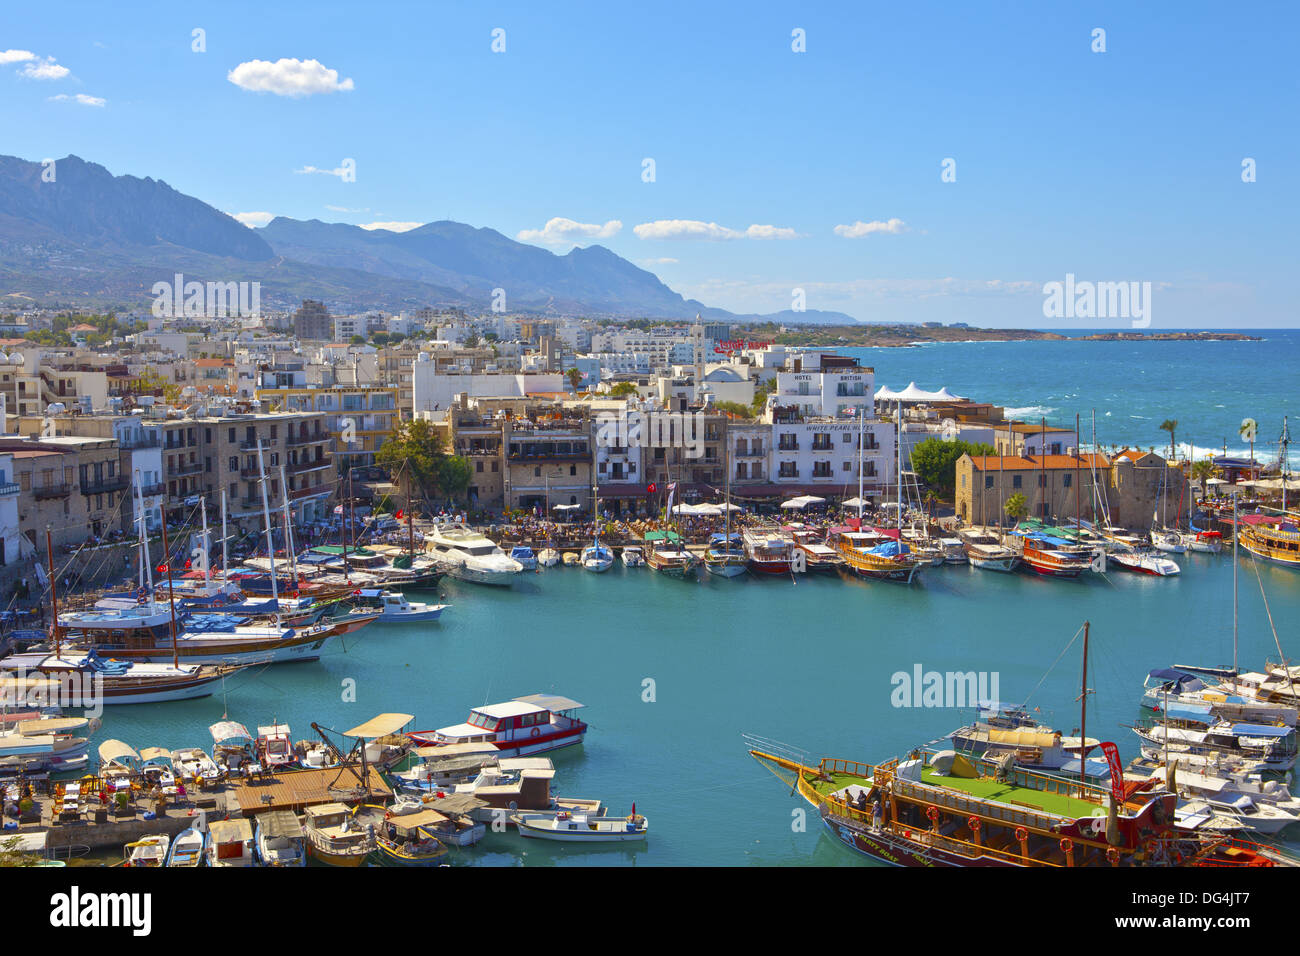 Vista panoramica del porto storico e la città vecchia di Kyrenia (Girne) sull'isola di Cipro, il 6 ottobre 2013. Foto Stock